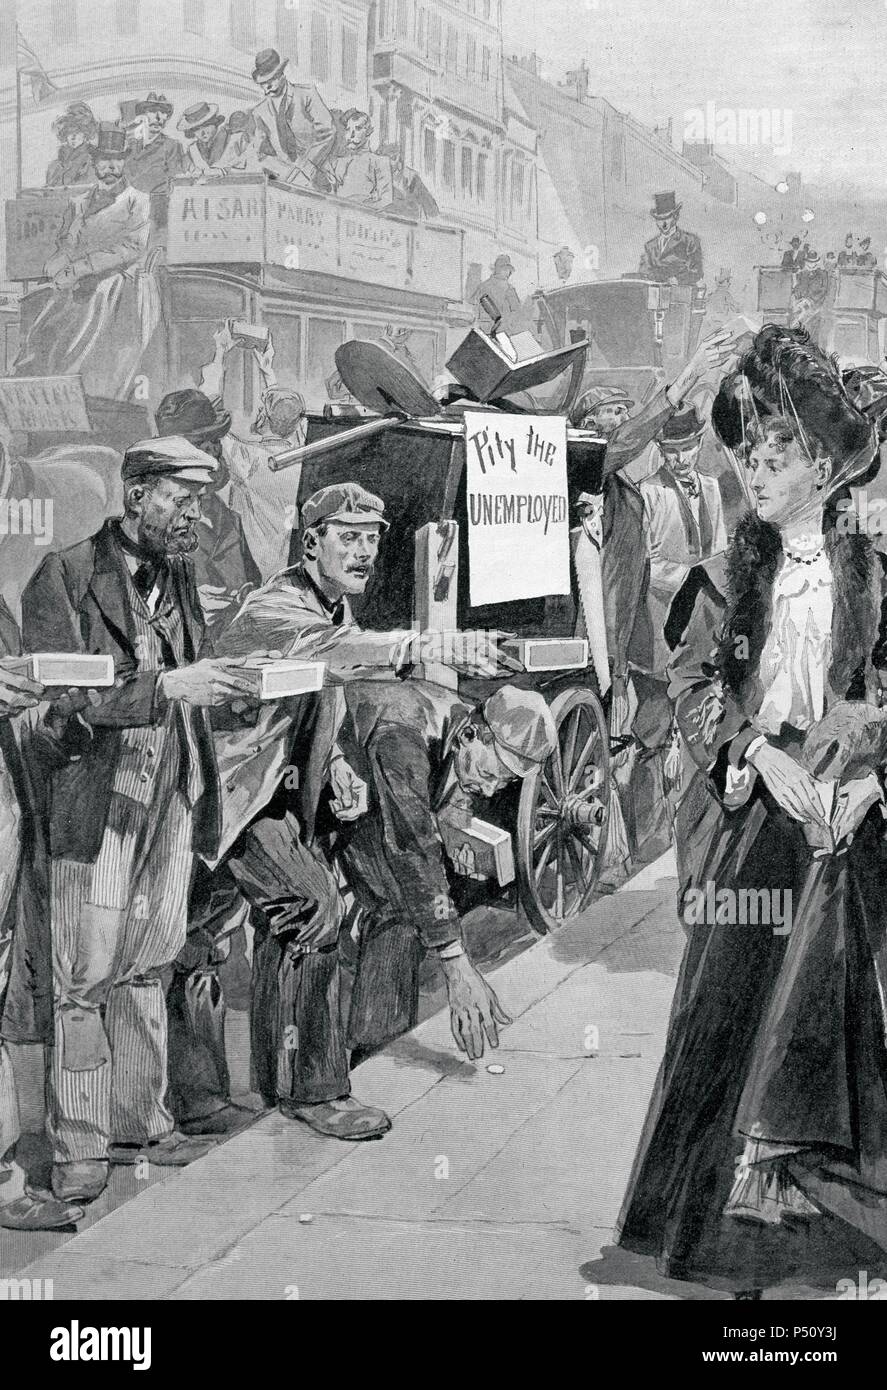 London. Rezession von 1903. Arbeitslose bitten um Almosen im aristokratischen Viertel der Stadt. In einer Kutsche, voller obsolet Werkzeuge nach der Industriellen Revolution, ein Banner mit der Aufschrift "Schade, die arbeitslos". England. Gravur. Stockfoto